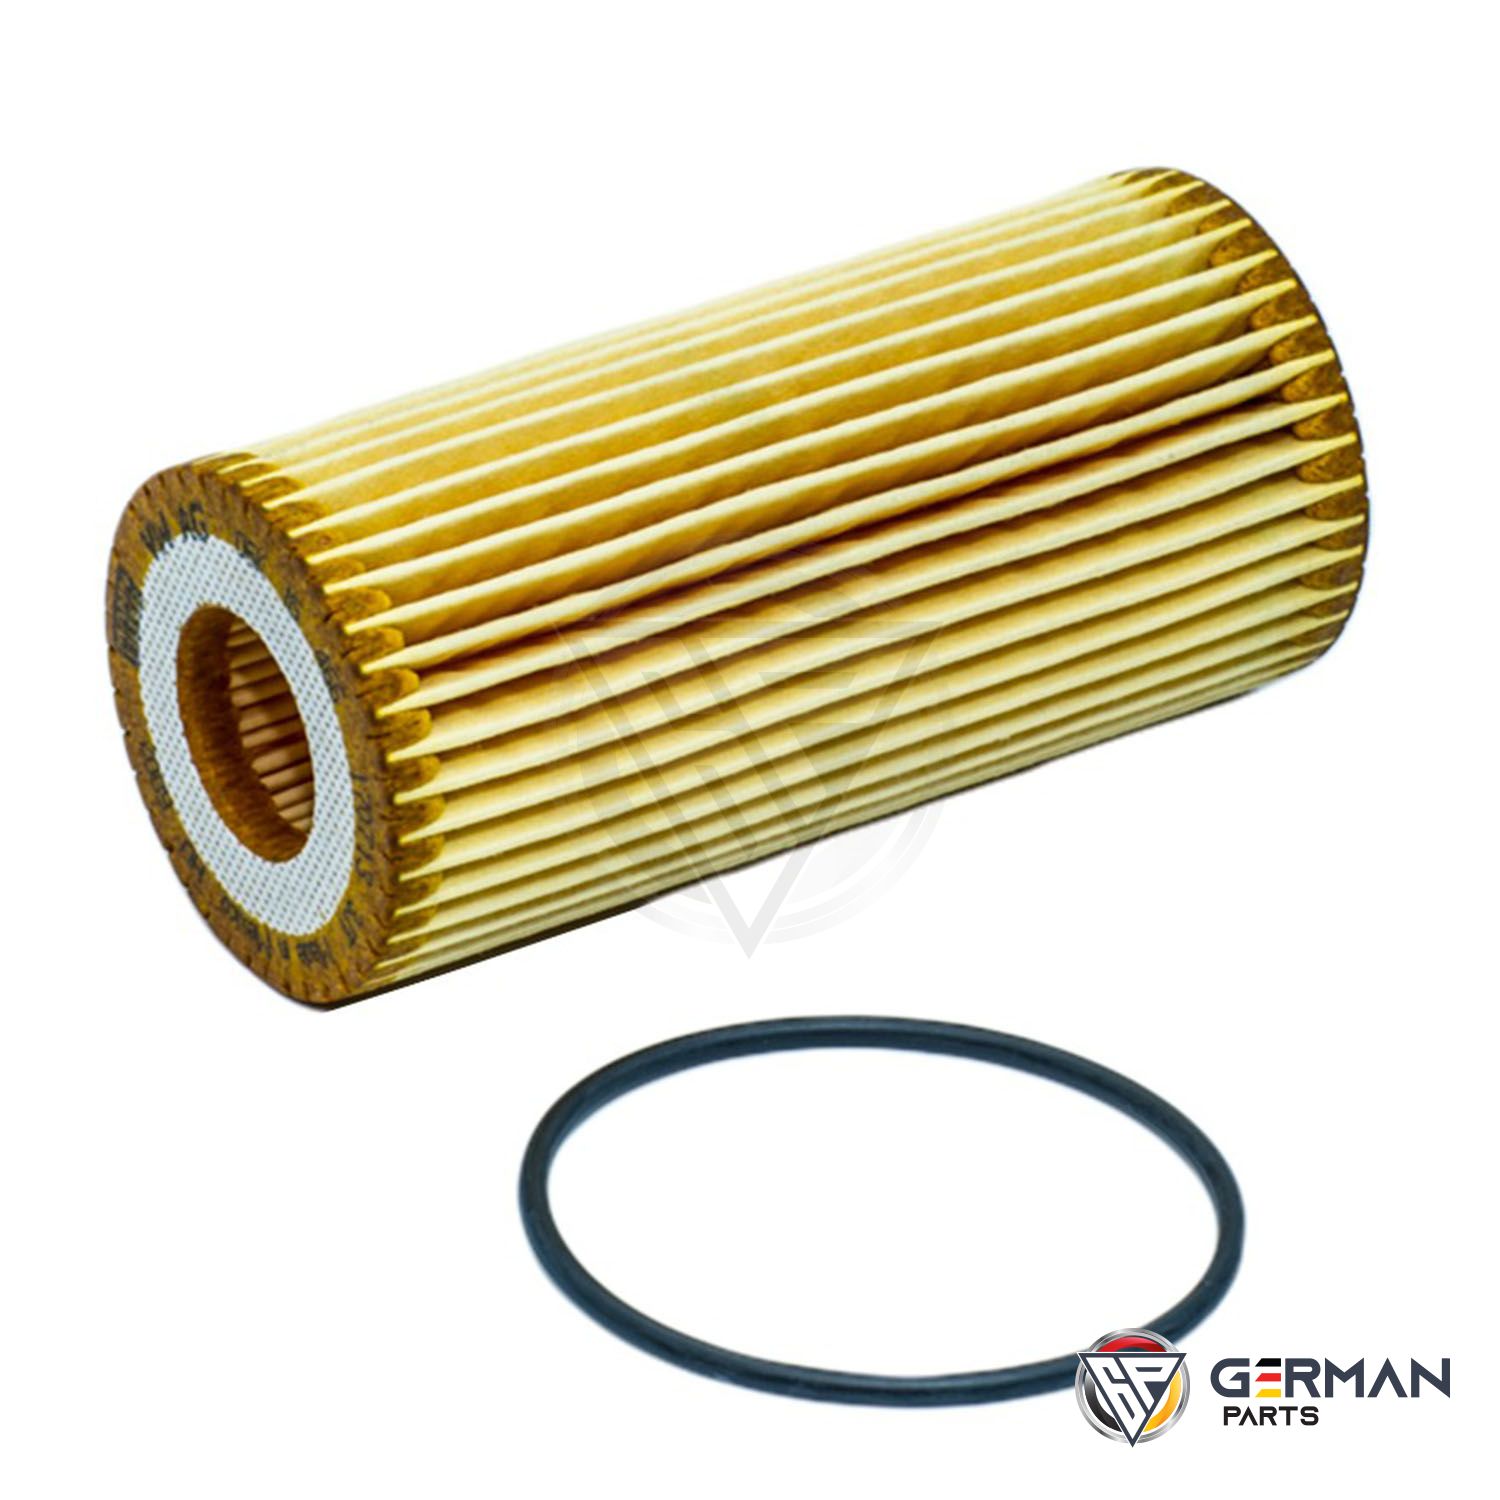 Buy Audi Volkswagen Oil Filter 06K115562 - German Parts